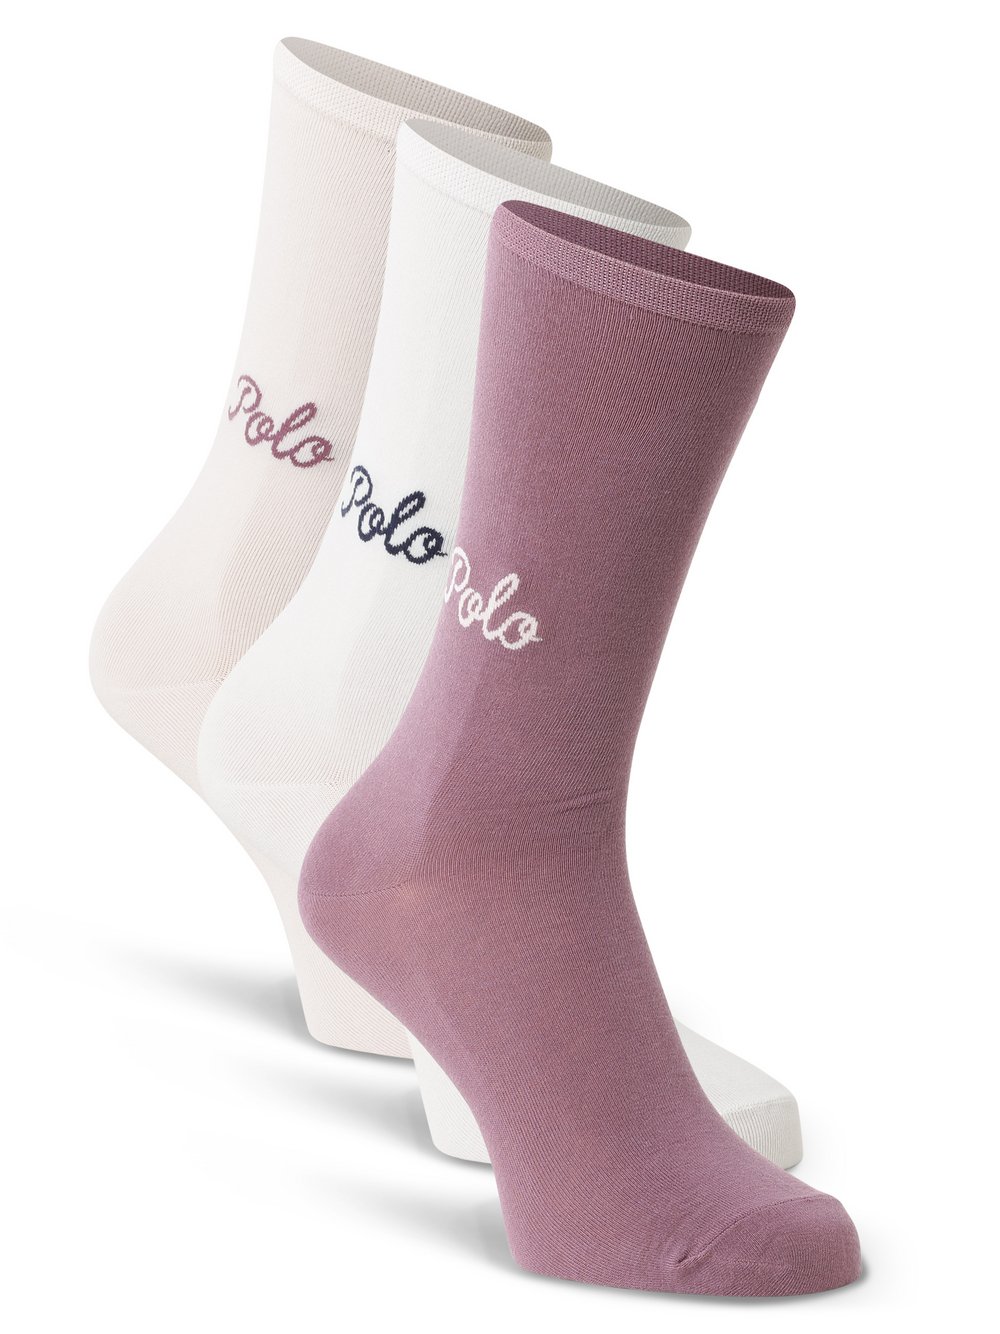 Polo Ralph Lauren - Skarpety damskie pakowane po 3 szt., różowy|biały